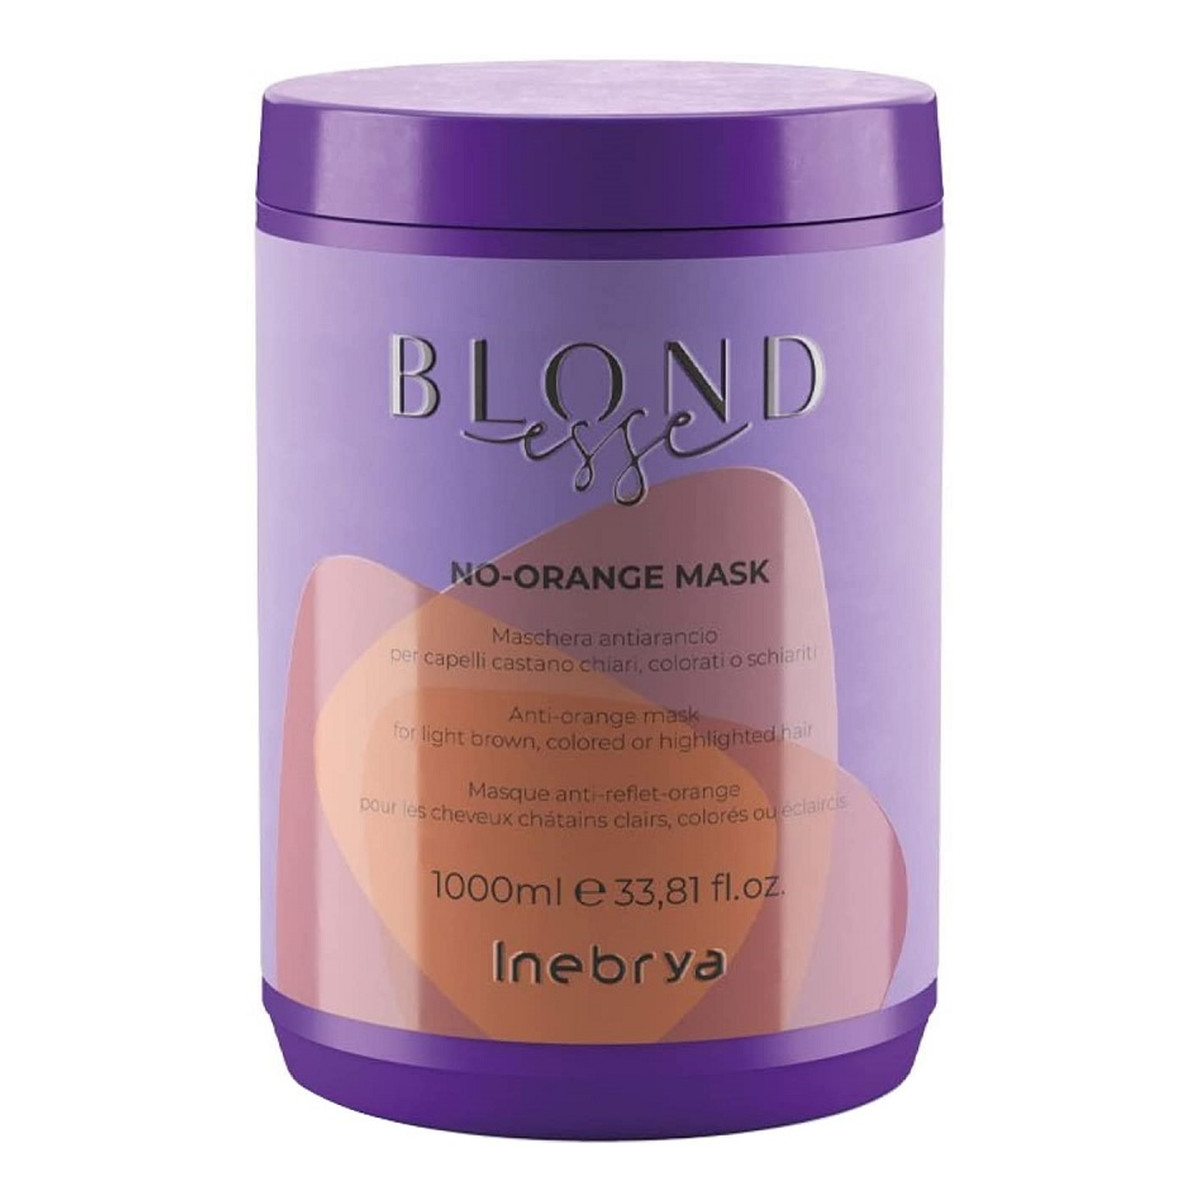 Inebrya Blondesse no-orange mask maska do włosów jasnobrązowych farbowanych i rozjaśnianych 1000ml